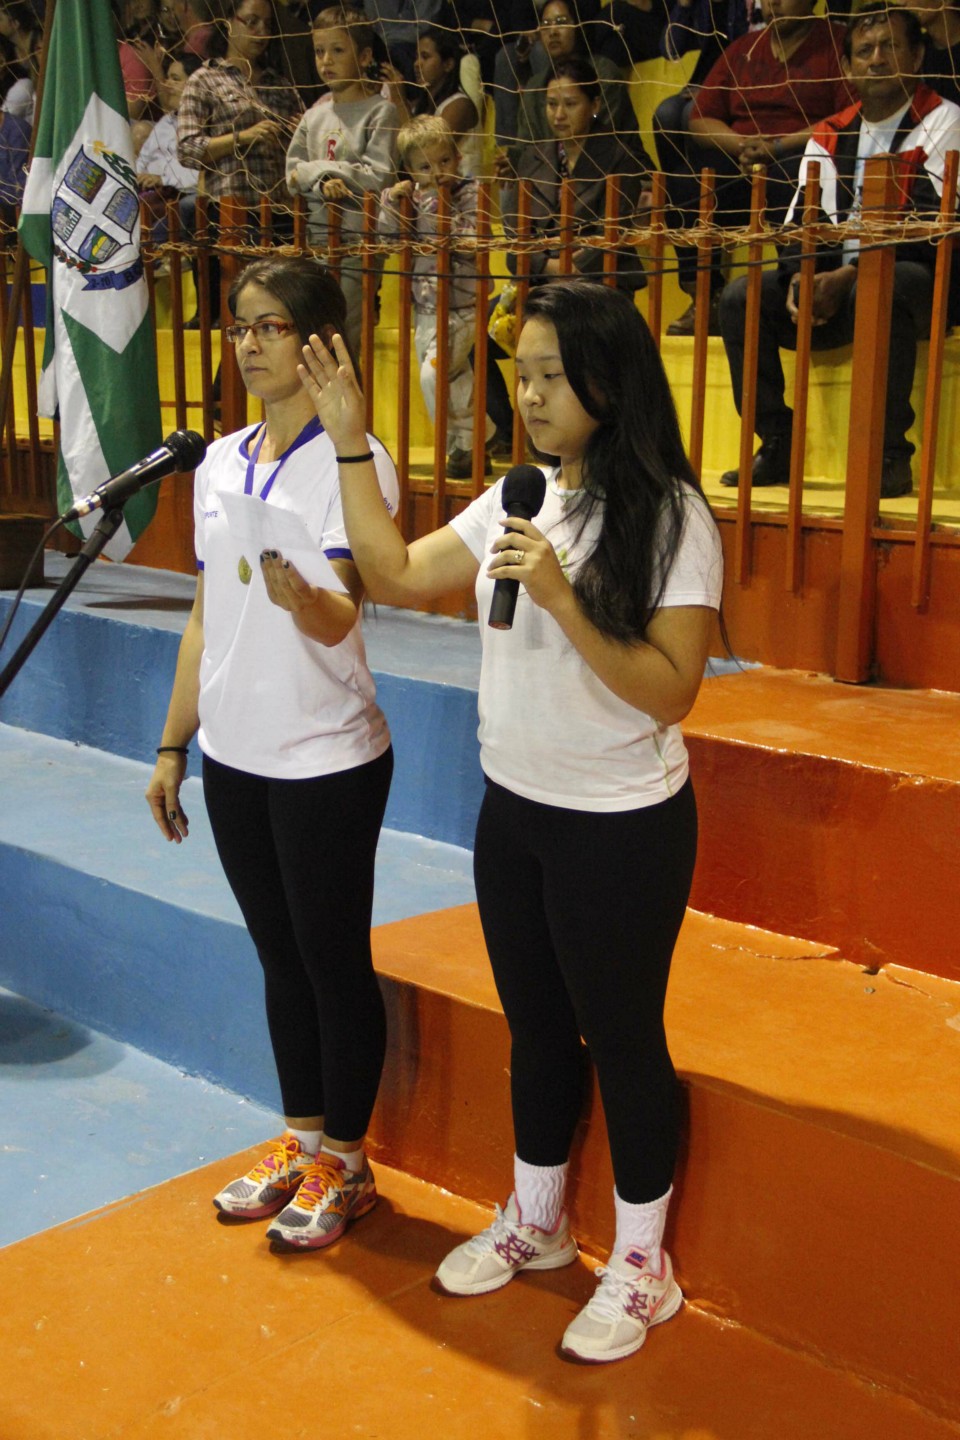 Prefeitura de Bonito faz abertura dos Jogos Escolares 2014